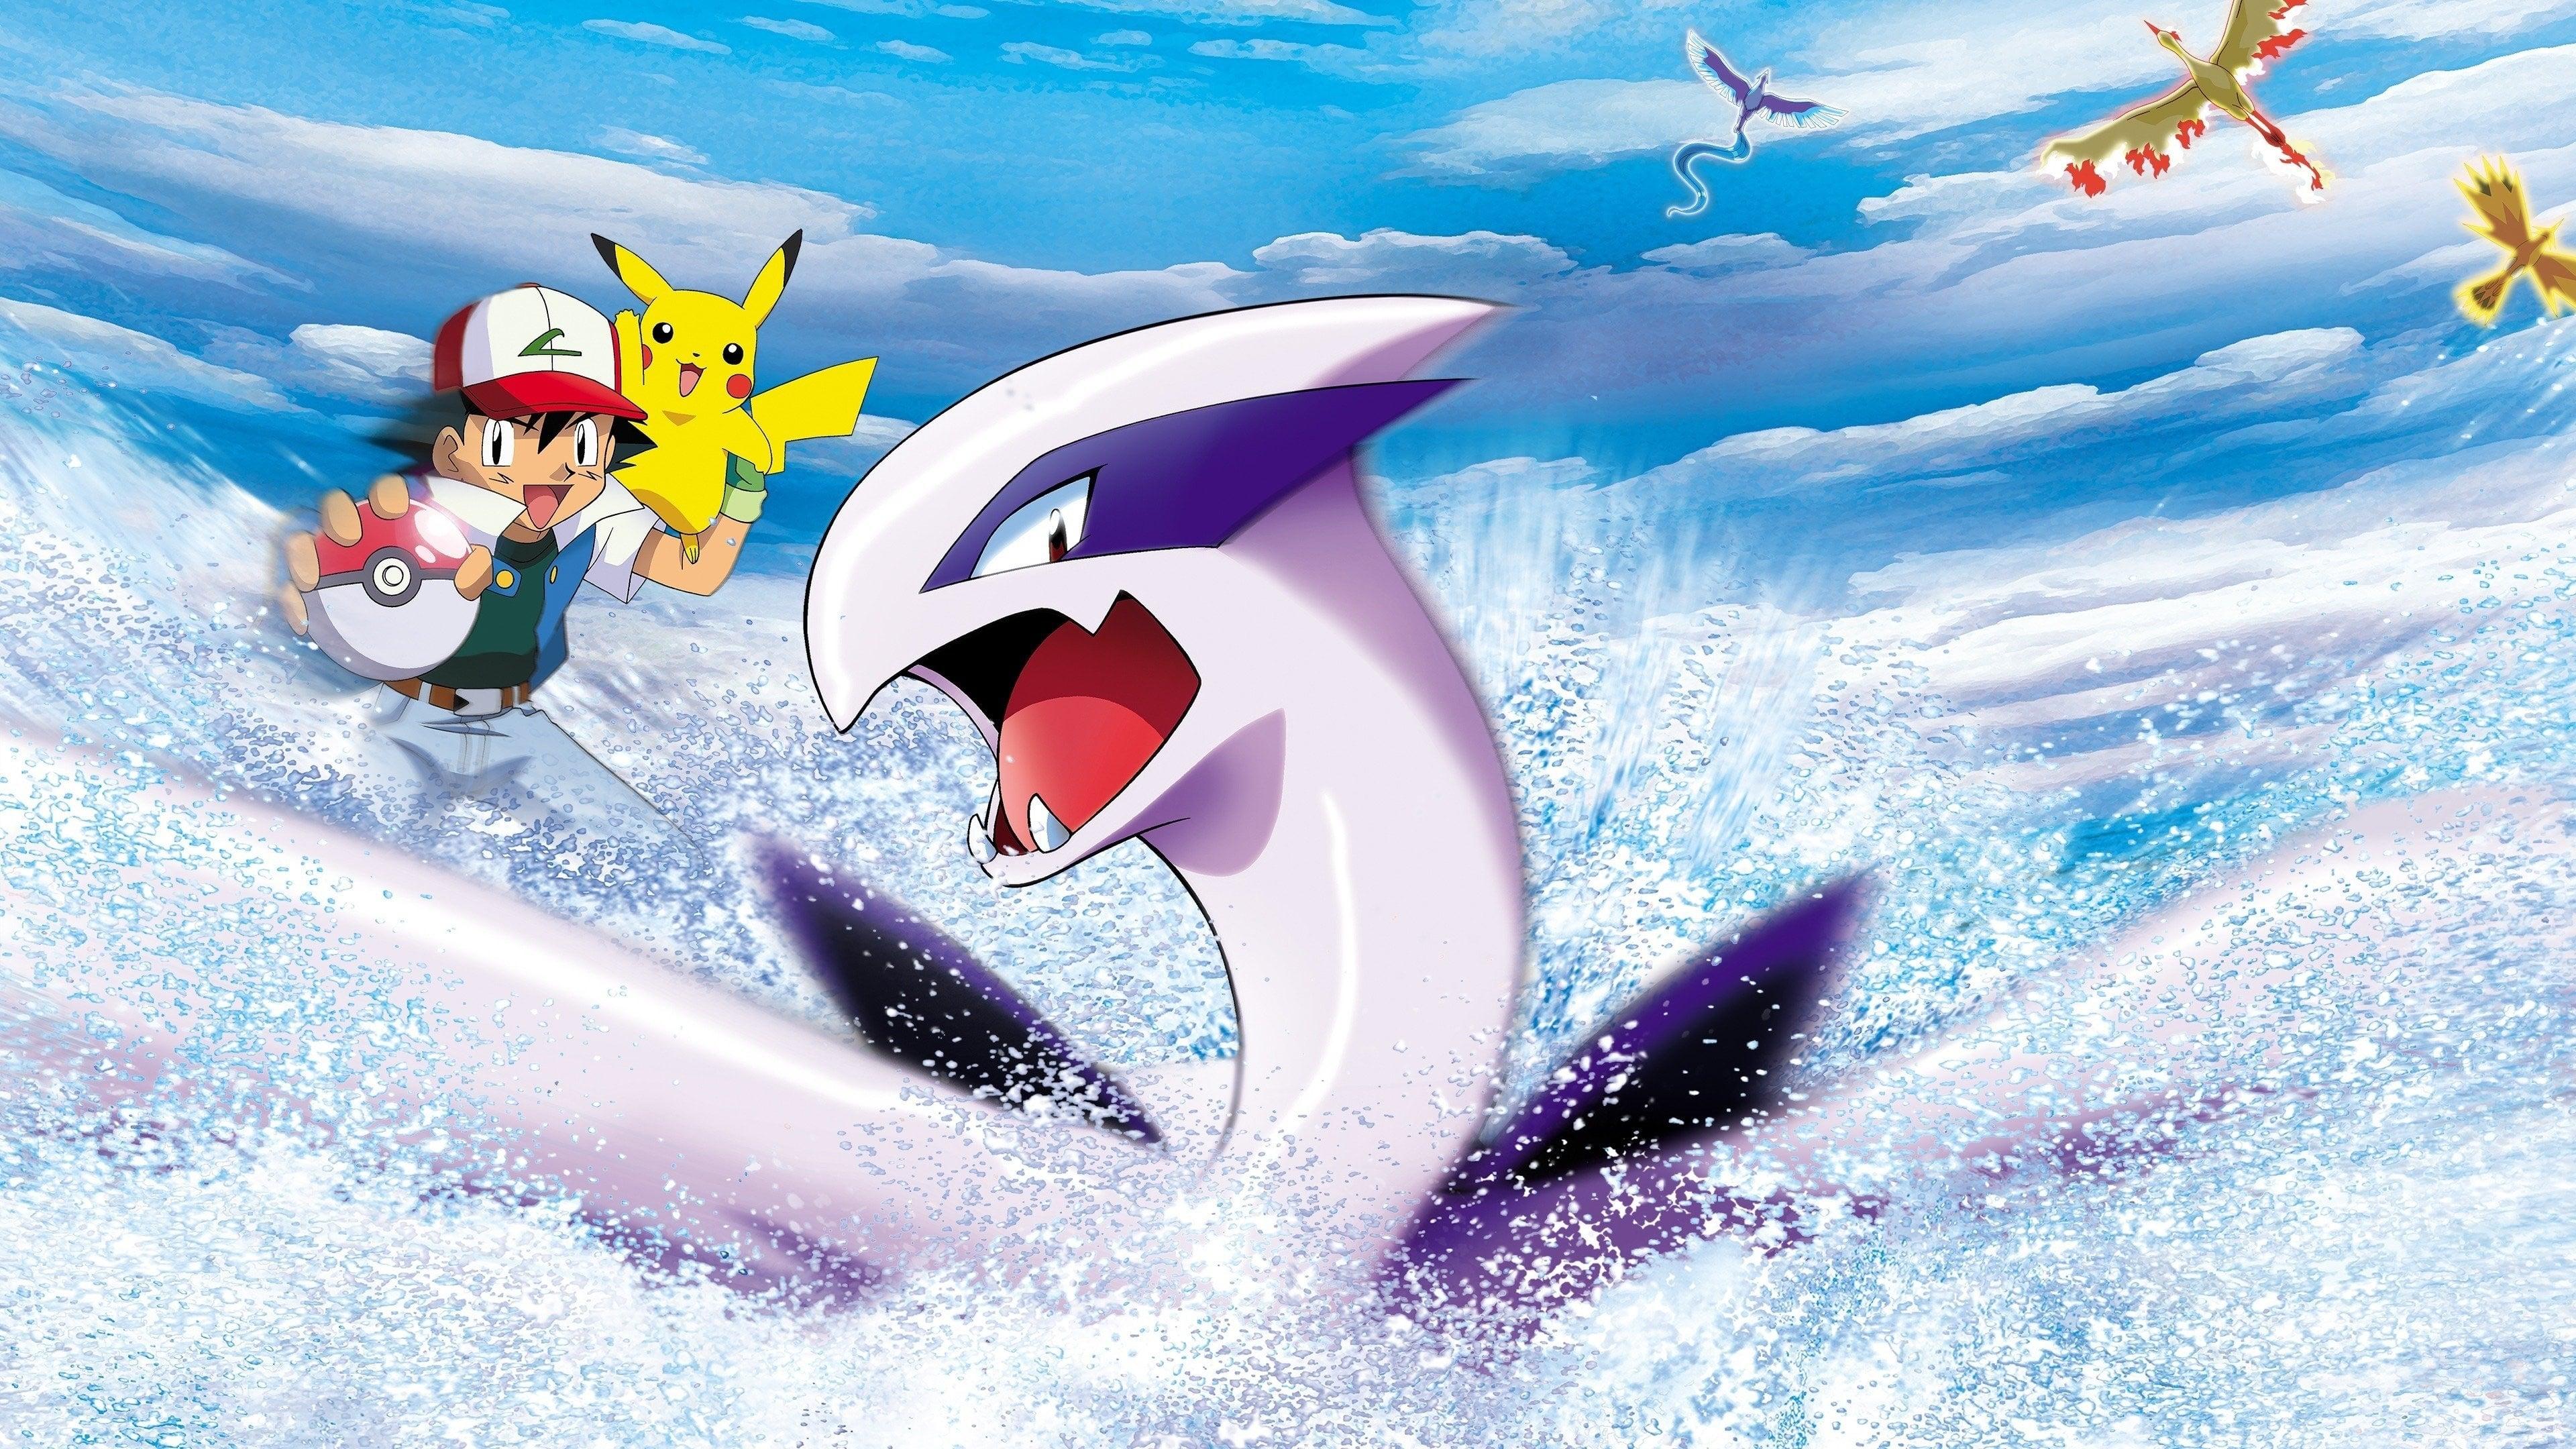 Pokémon the Movie 2000 backdrop